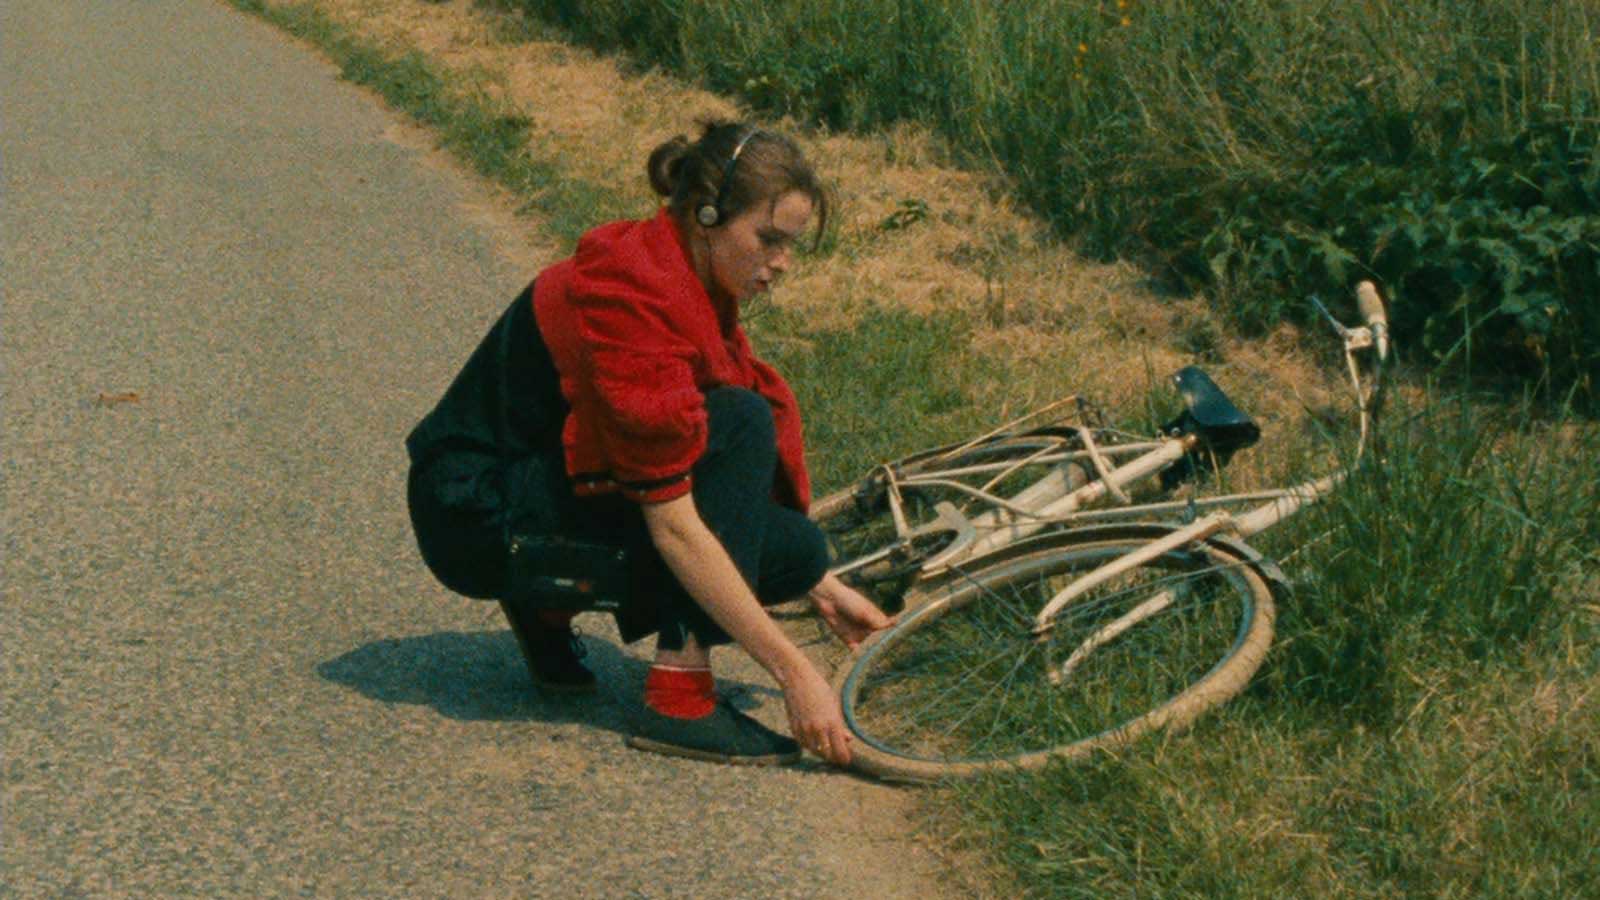 دختر با لباس سرخ کنار جاده با دوچرخه افتاده روی زمین در فیلم Four Adventures of Reinette and Mirabelle